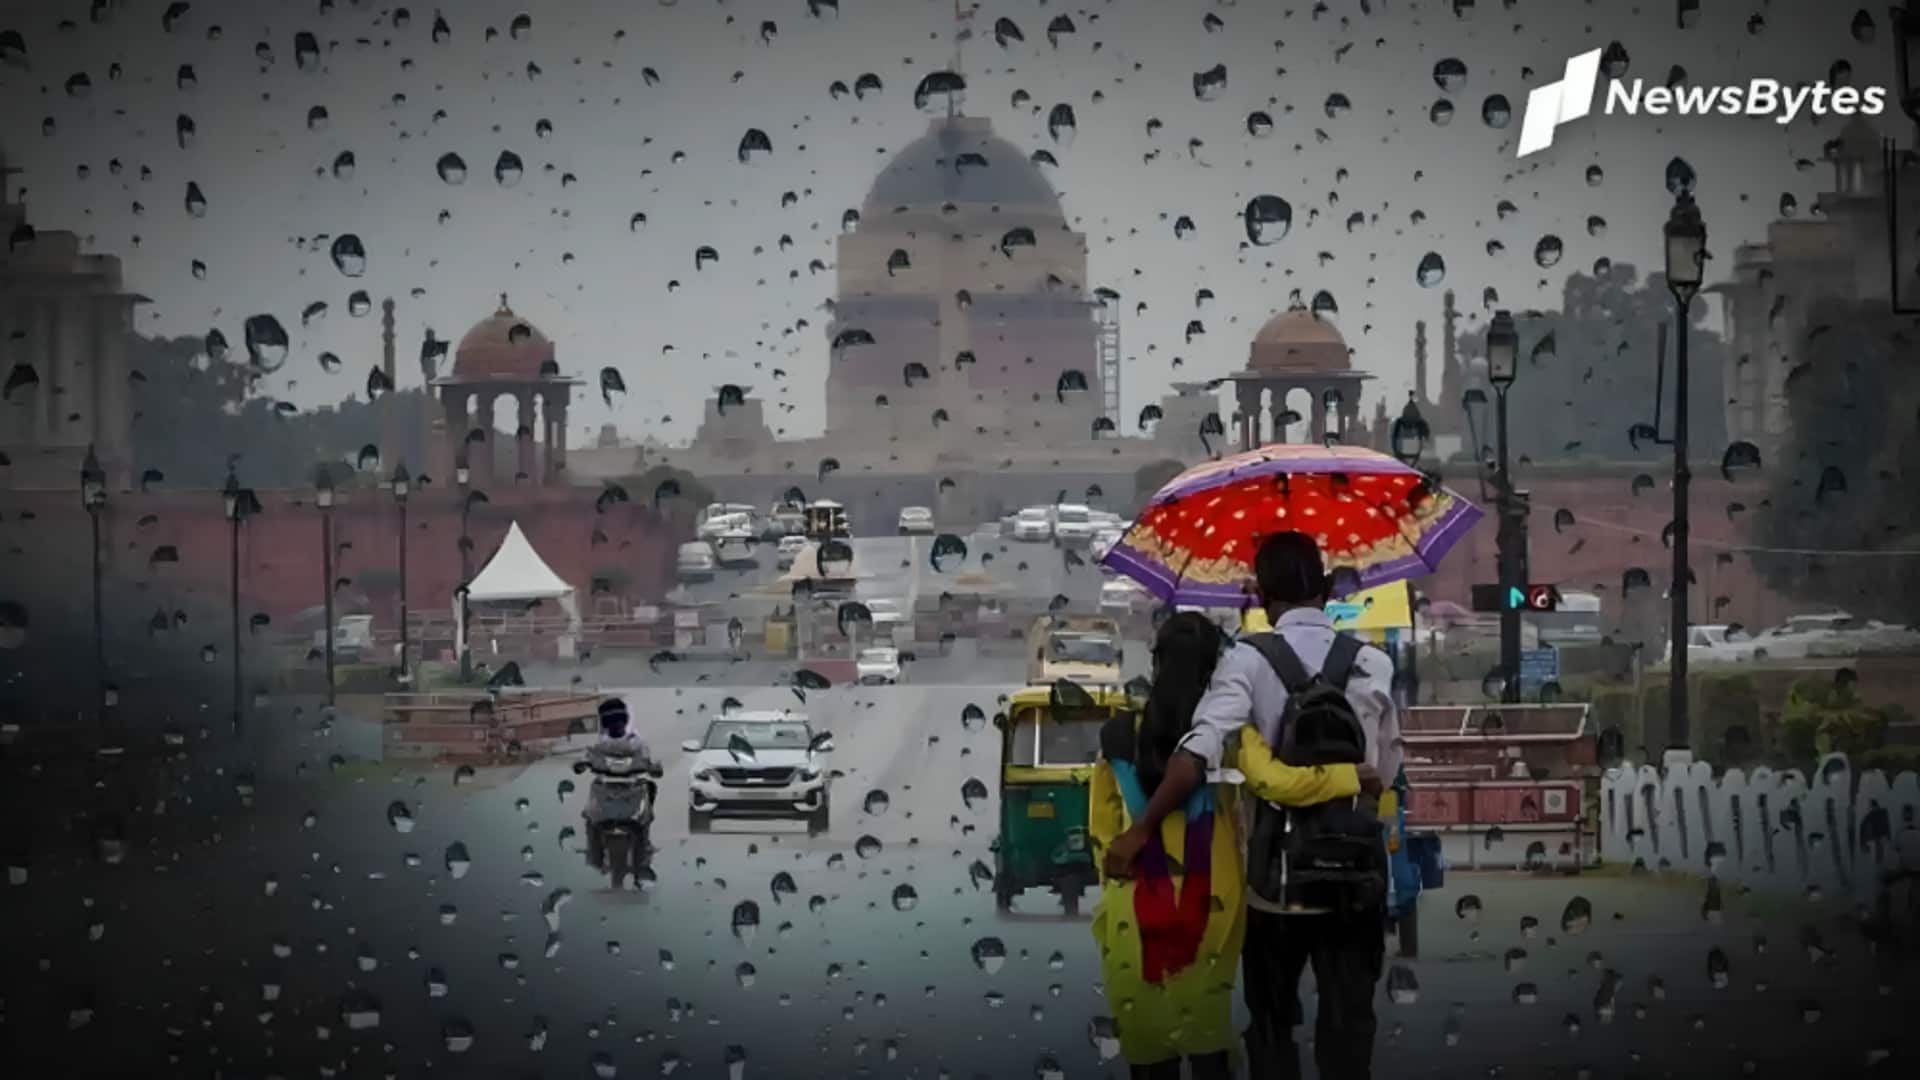 दिल्ली में एक हफ्ते तक बारिश की संभावना, उत्तर भारत के कई राज्यों में भी राहत